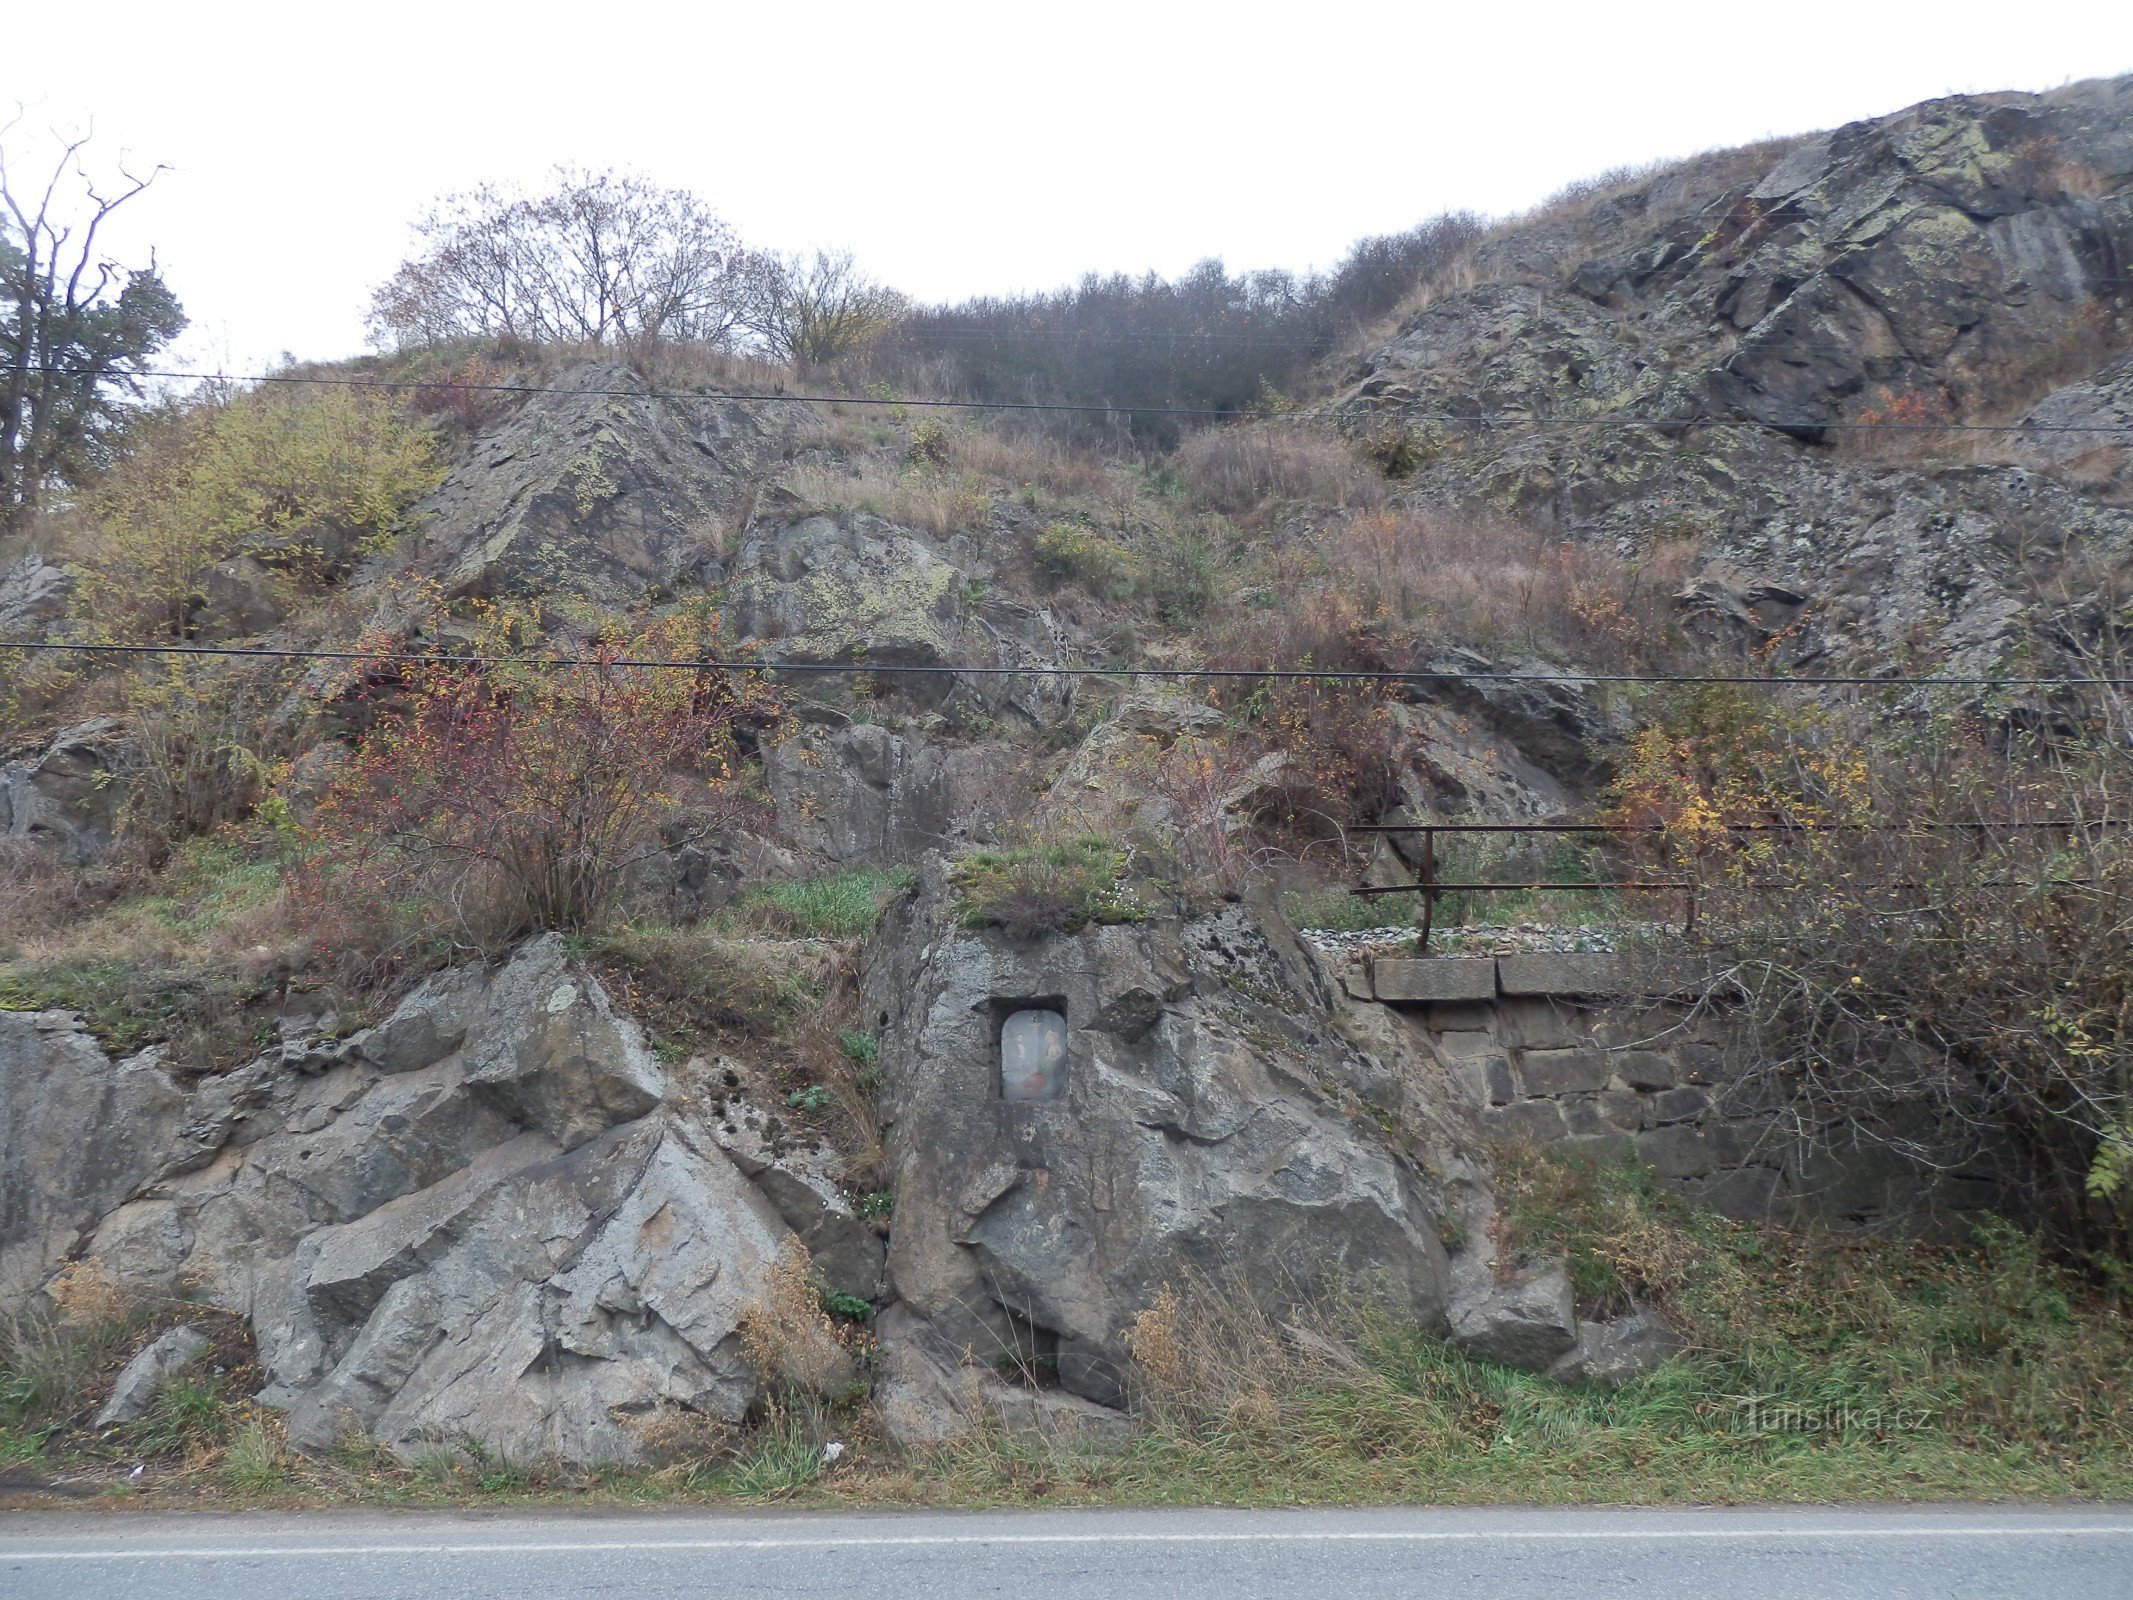 Třebíčsk durch das untergegangene Kurbad bis zum geheimnisvollen Berg Klučovská